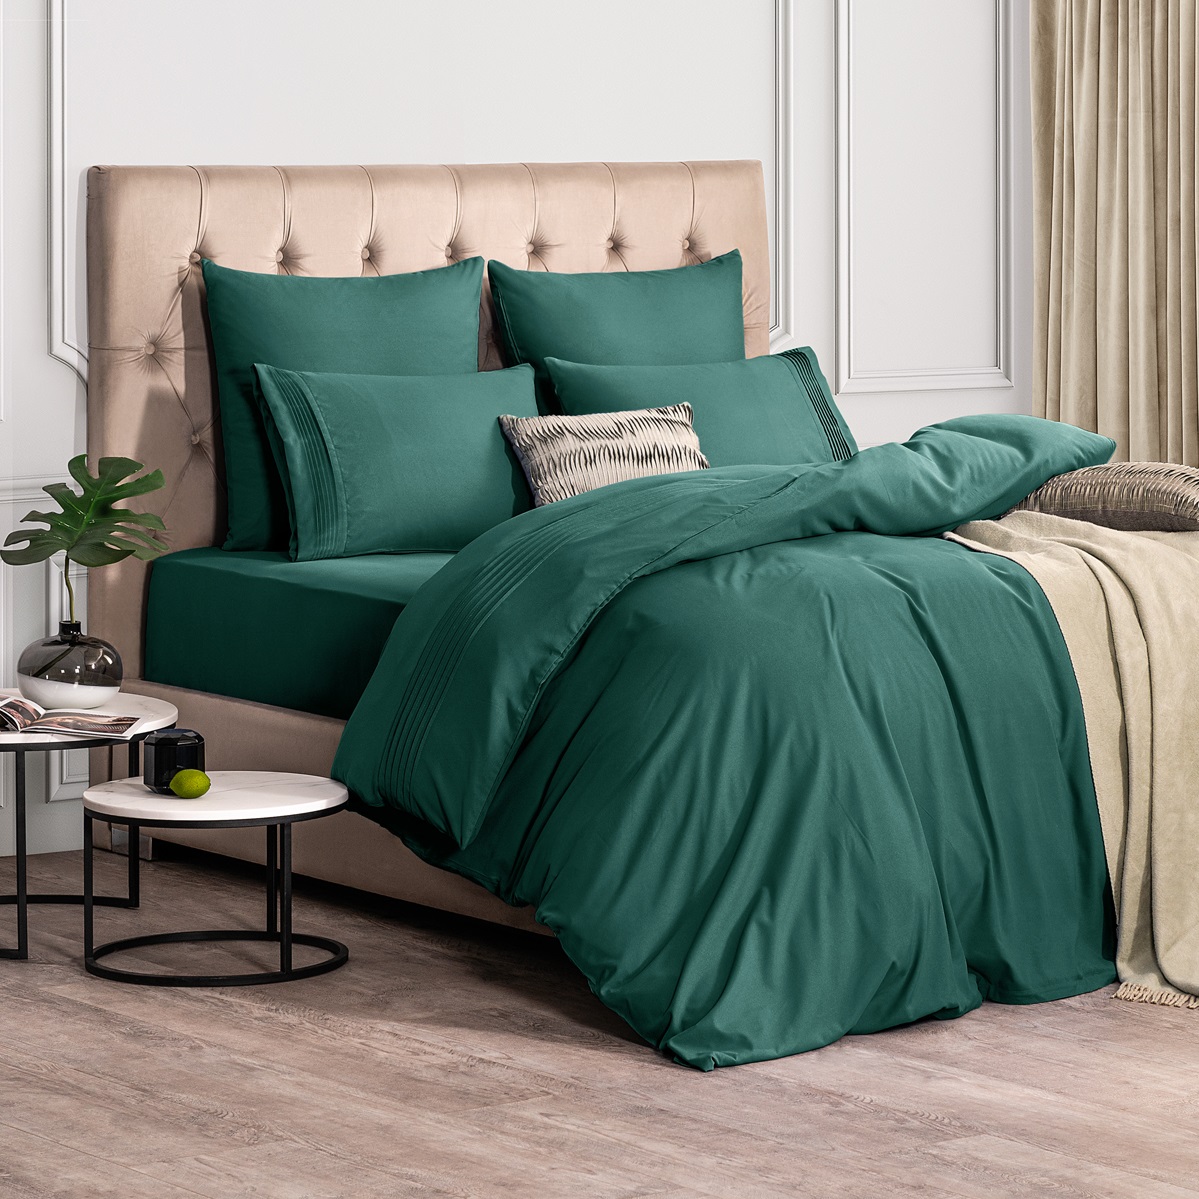 Комплект постельного белья Sleepix Миоко зеленый Двуспальный, размер Двуспальный - фото 2